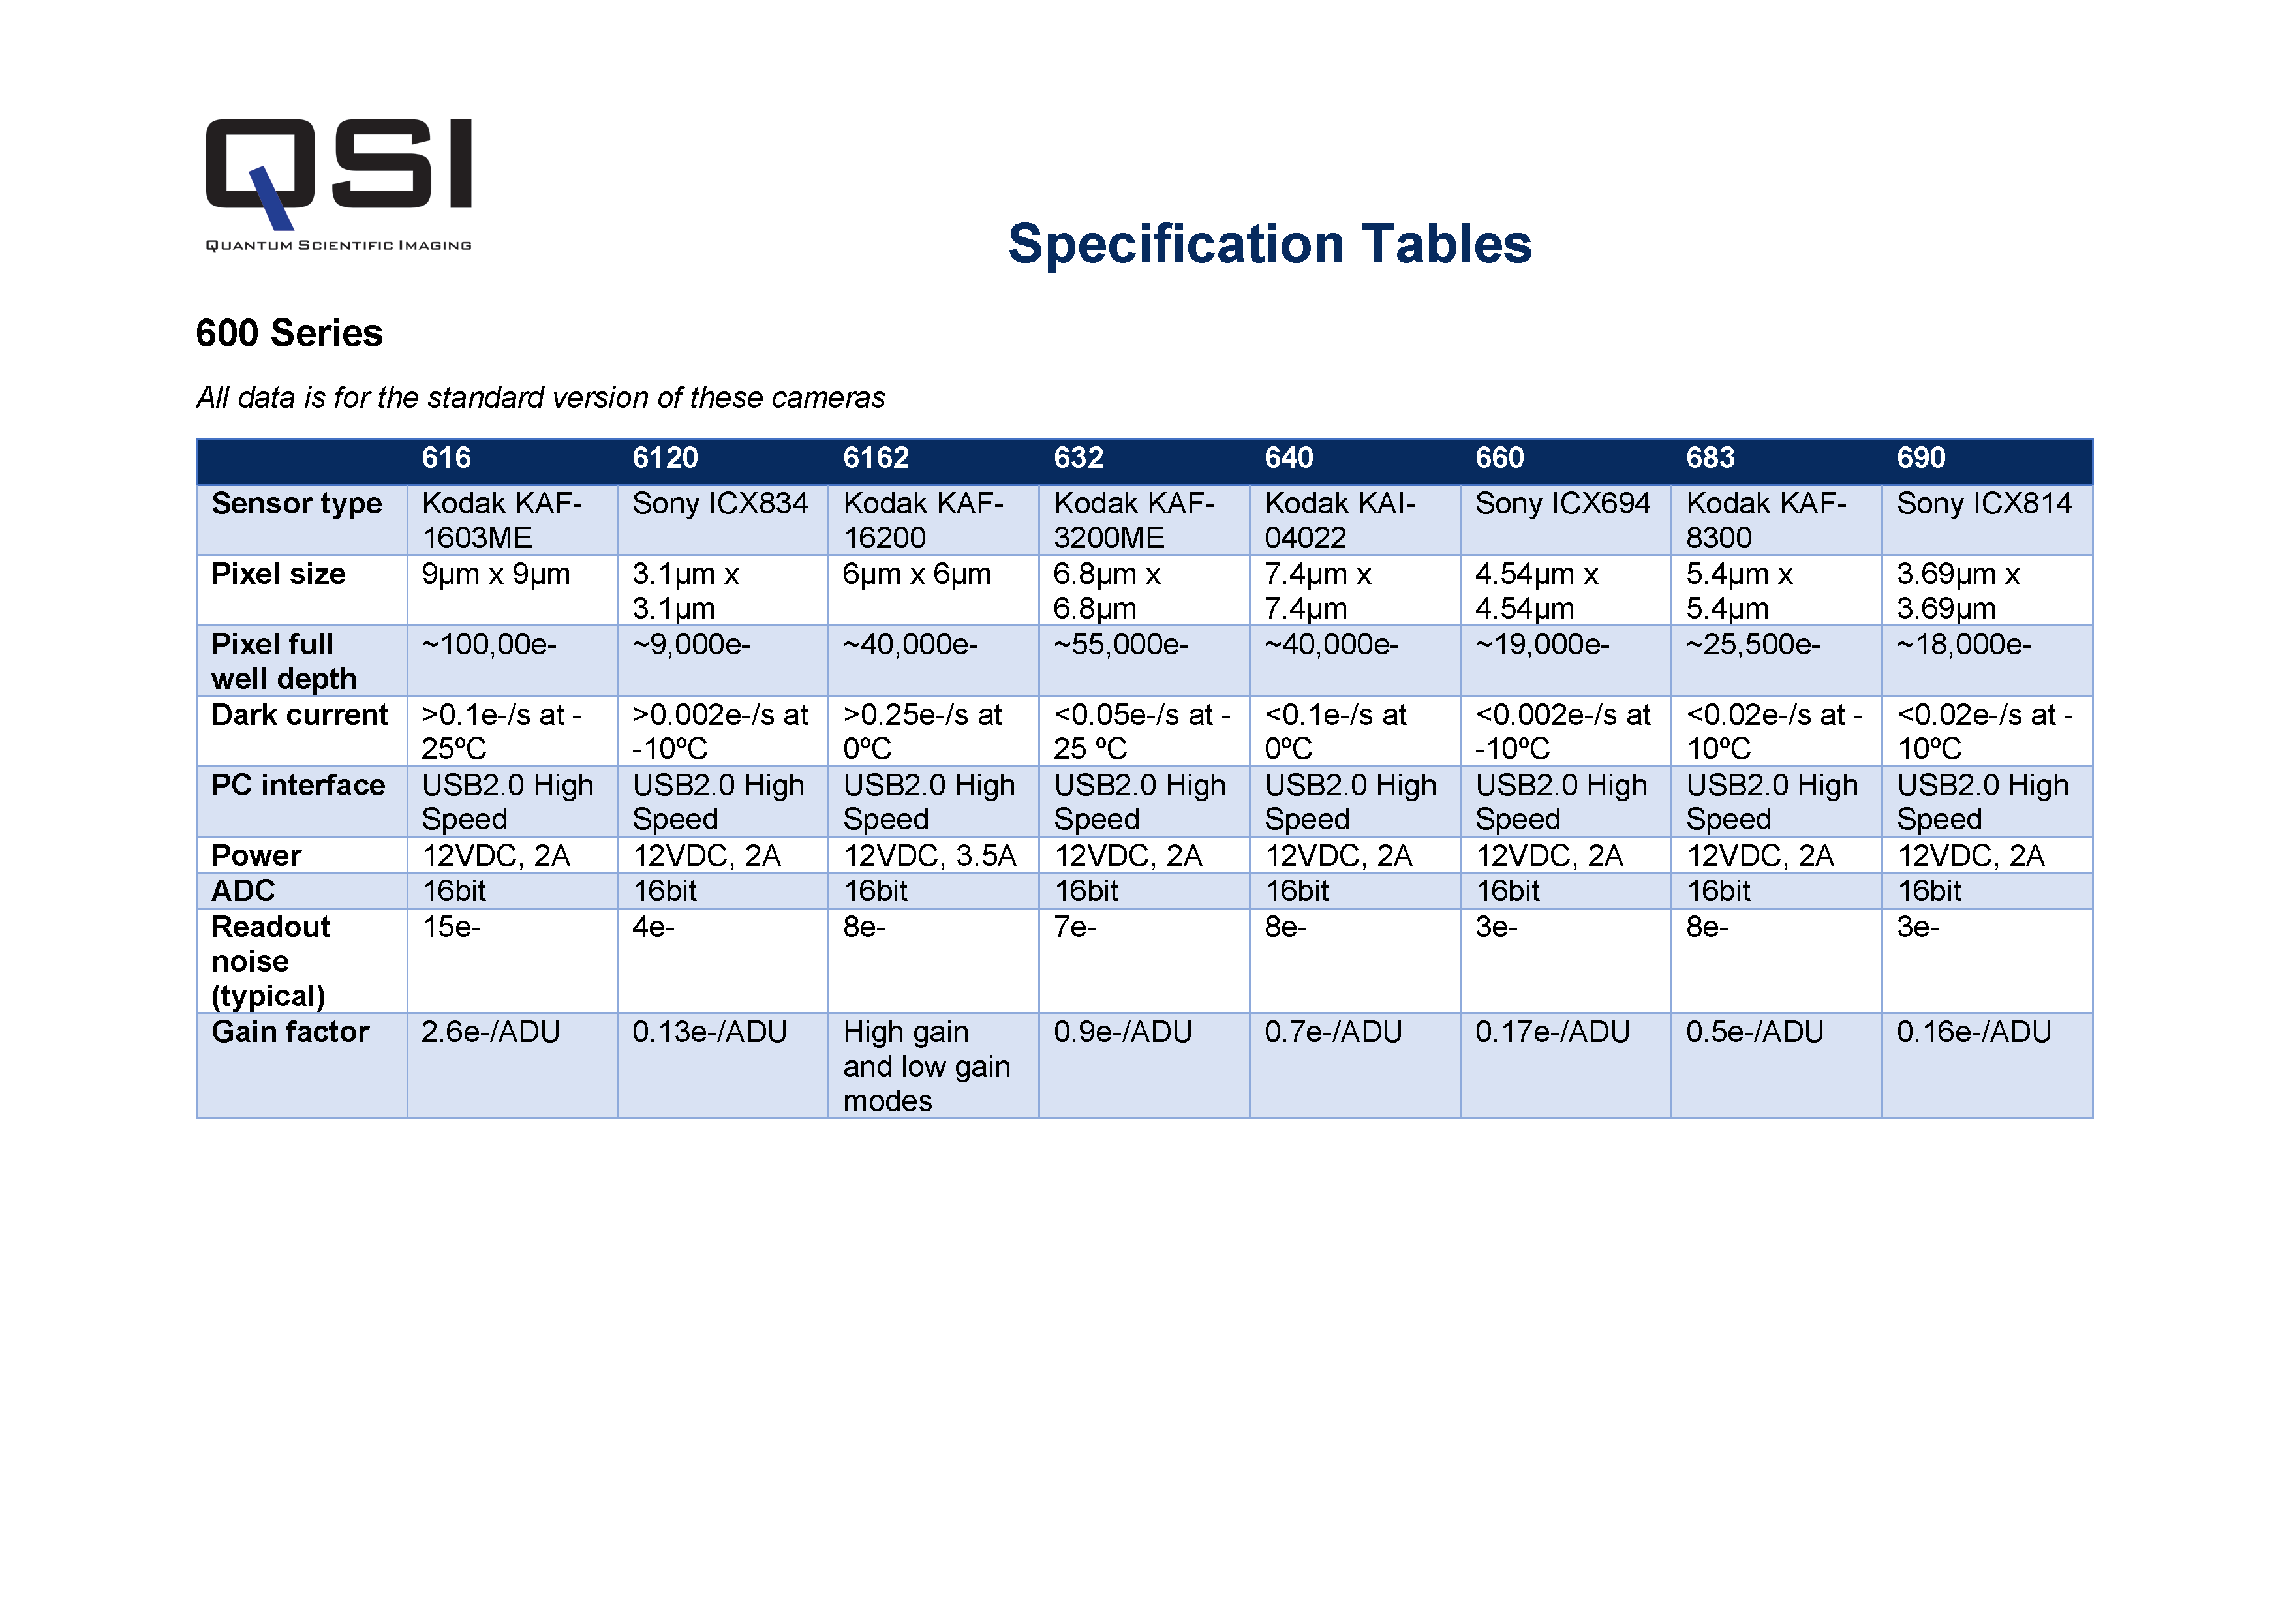 Specification Tables – Quantum Scientific Imaging